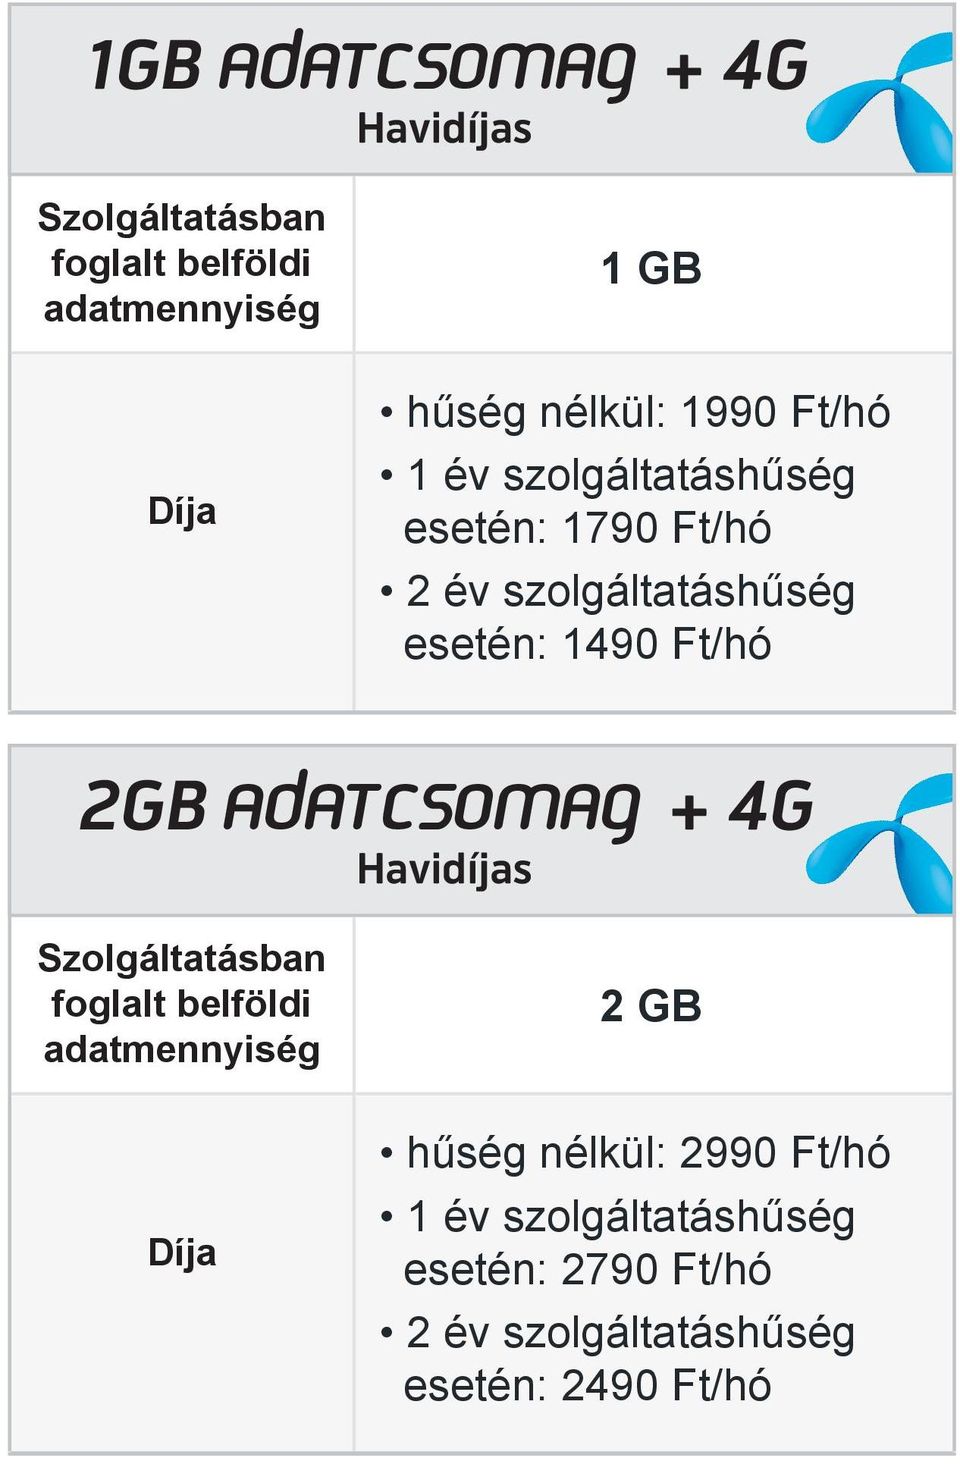 2GB adatcsomag + 4G as Szolgáltatásban foglalt belföldi adatmennyiség Díja 2 GB hűség nélkül: